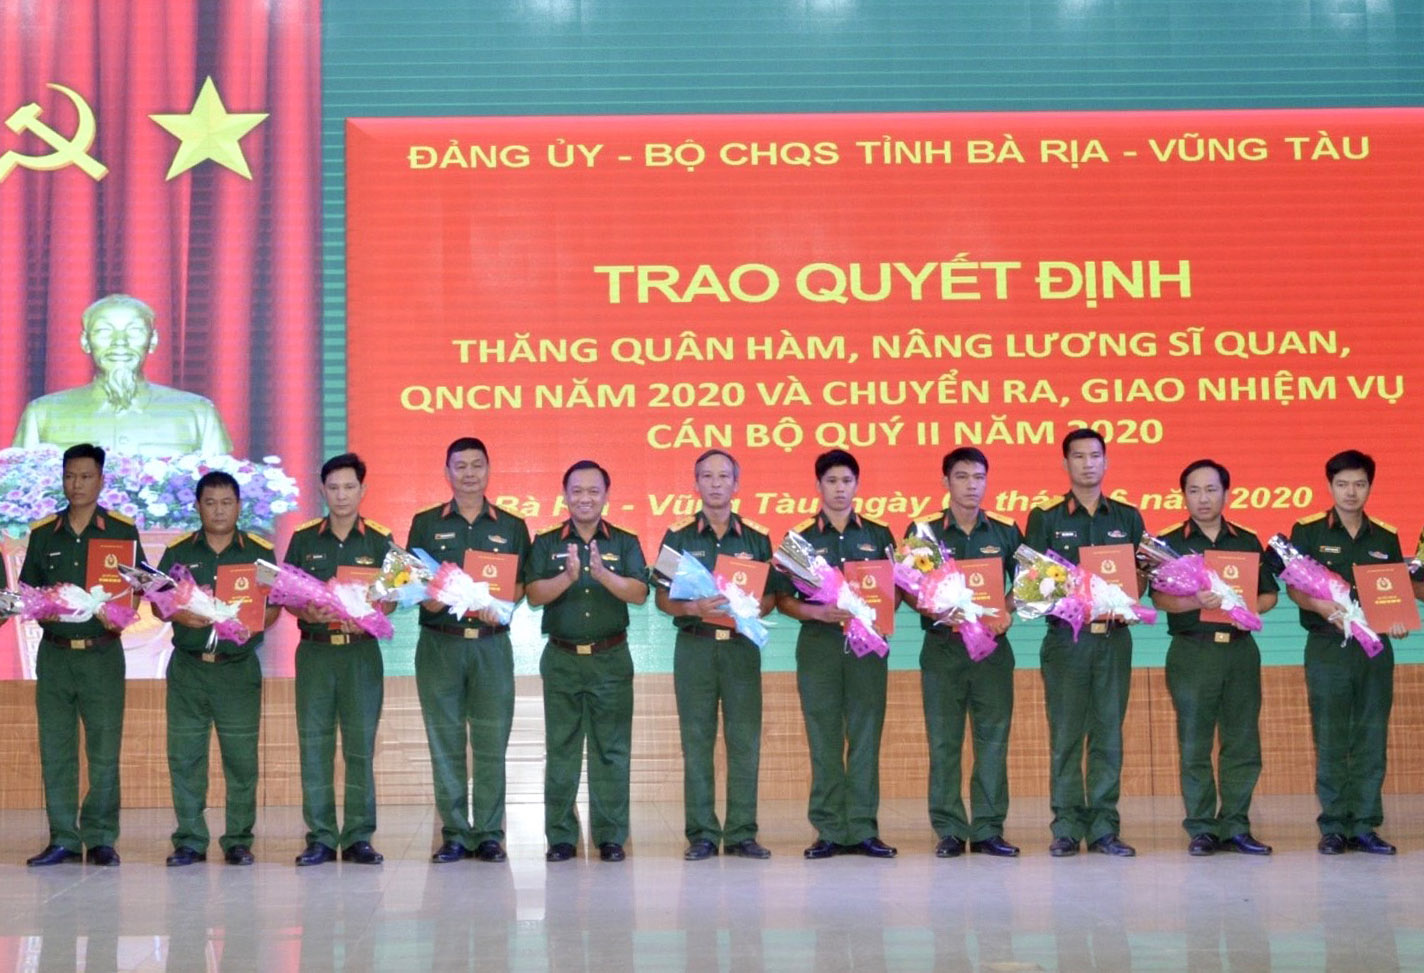 Trung tá Nguyễn Thành Trung, Chính ủy Bộ CHQS tỉnh trao quyết định cho các đồng chí được thăng quân hàm, nâng lương năm 2020.